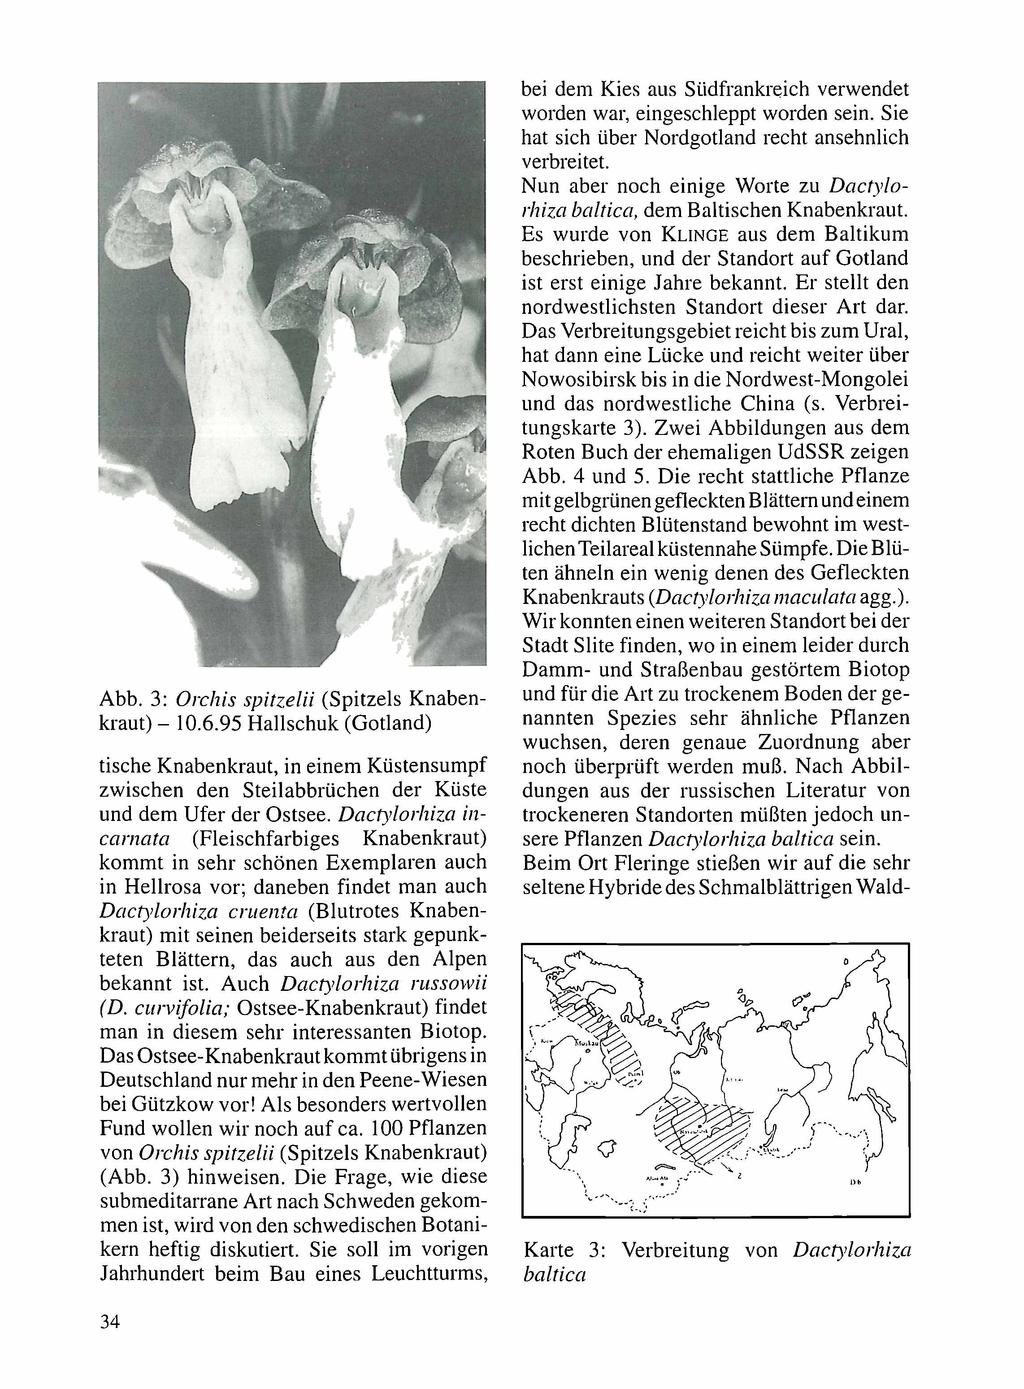 Abb. 3: Orchis spitzelii (Spitzels Knabenkraut) - 10.6.95 Hallschuk (Gotland) tische Knabenkraut, in einem Küstensumpf zwischen den Steilabbrüchen der Küste und dem Ufer der Ostsee.